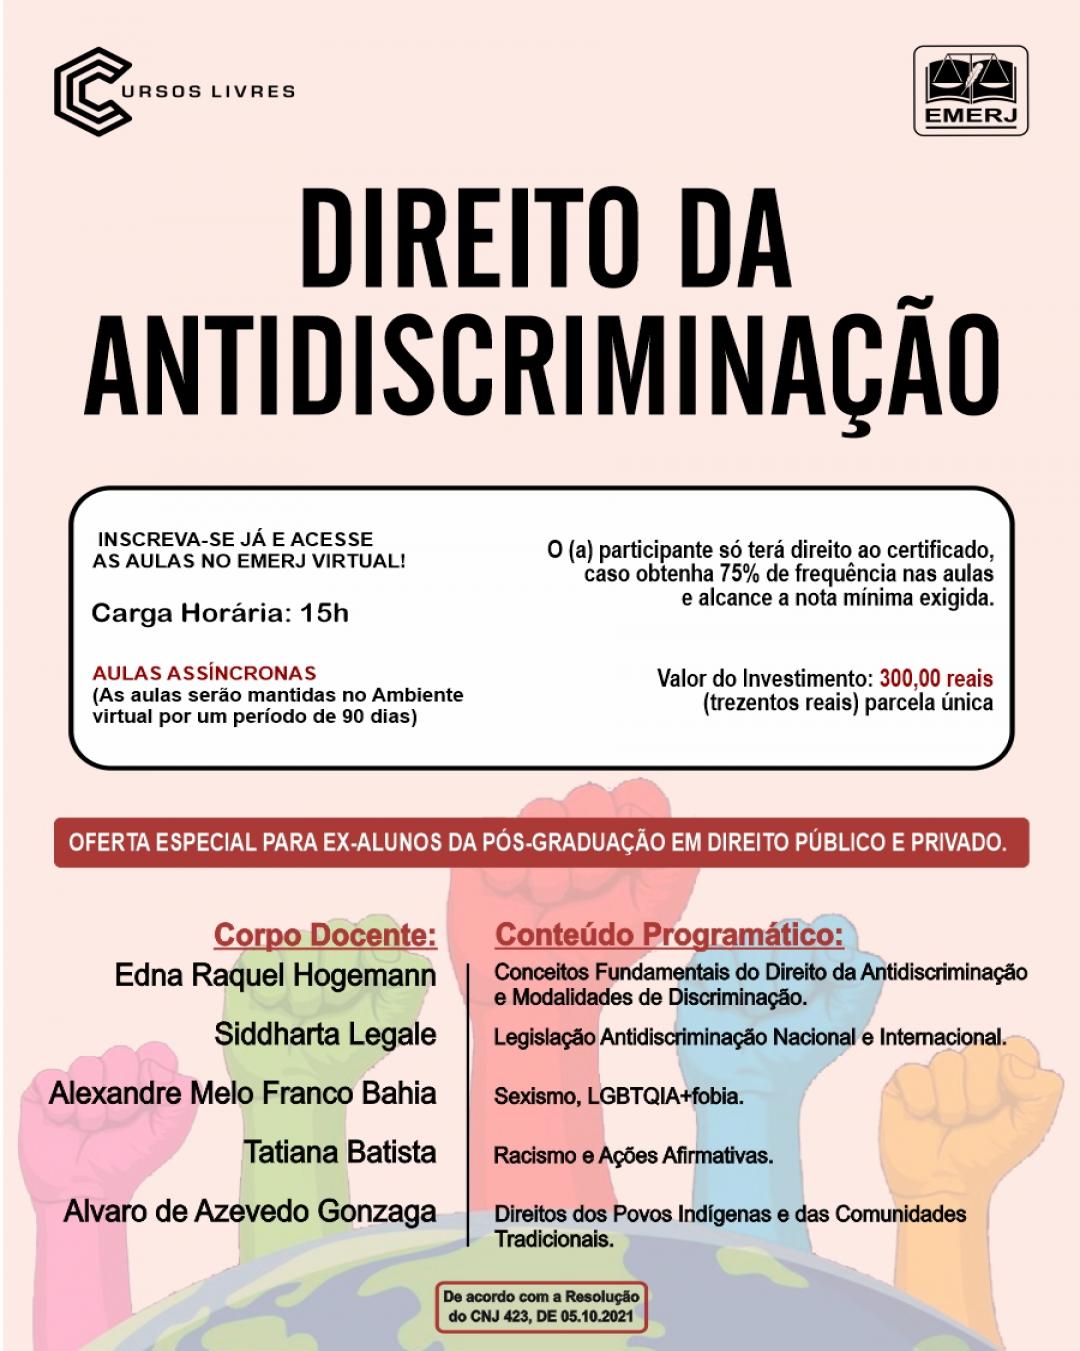 Imagem do banner principal do curso - DIREITO DA ANTIDISCRIMINAÇÃO